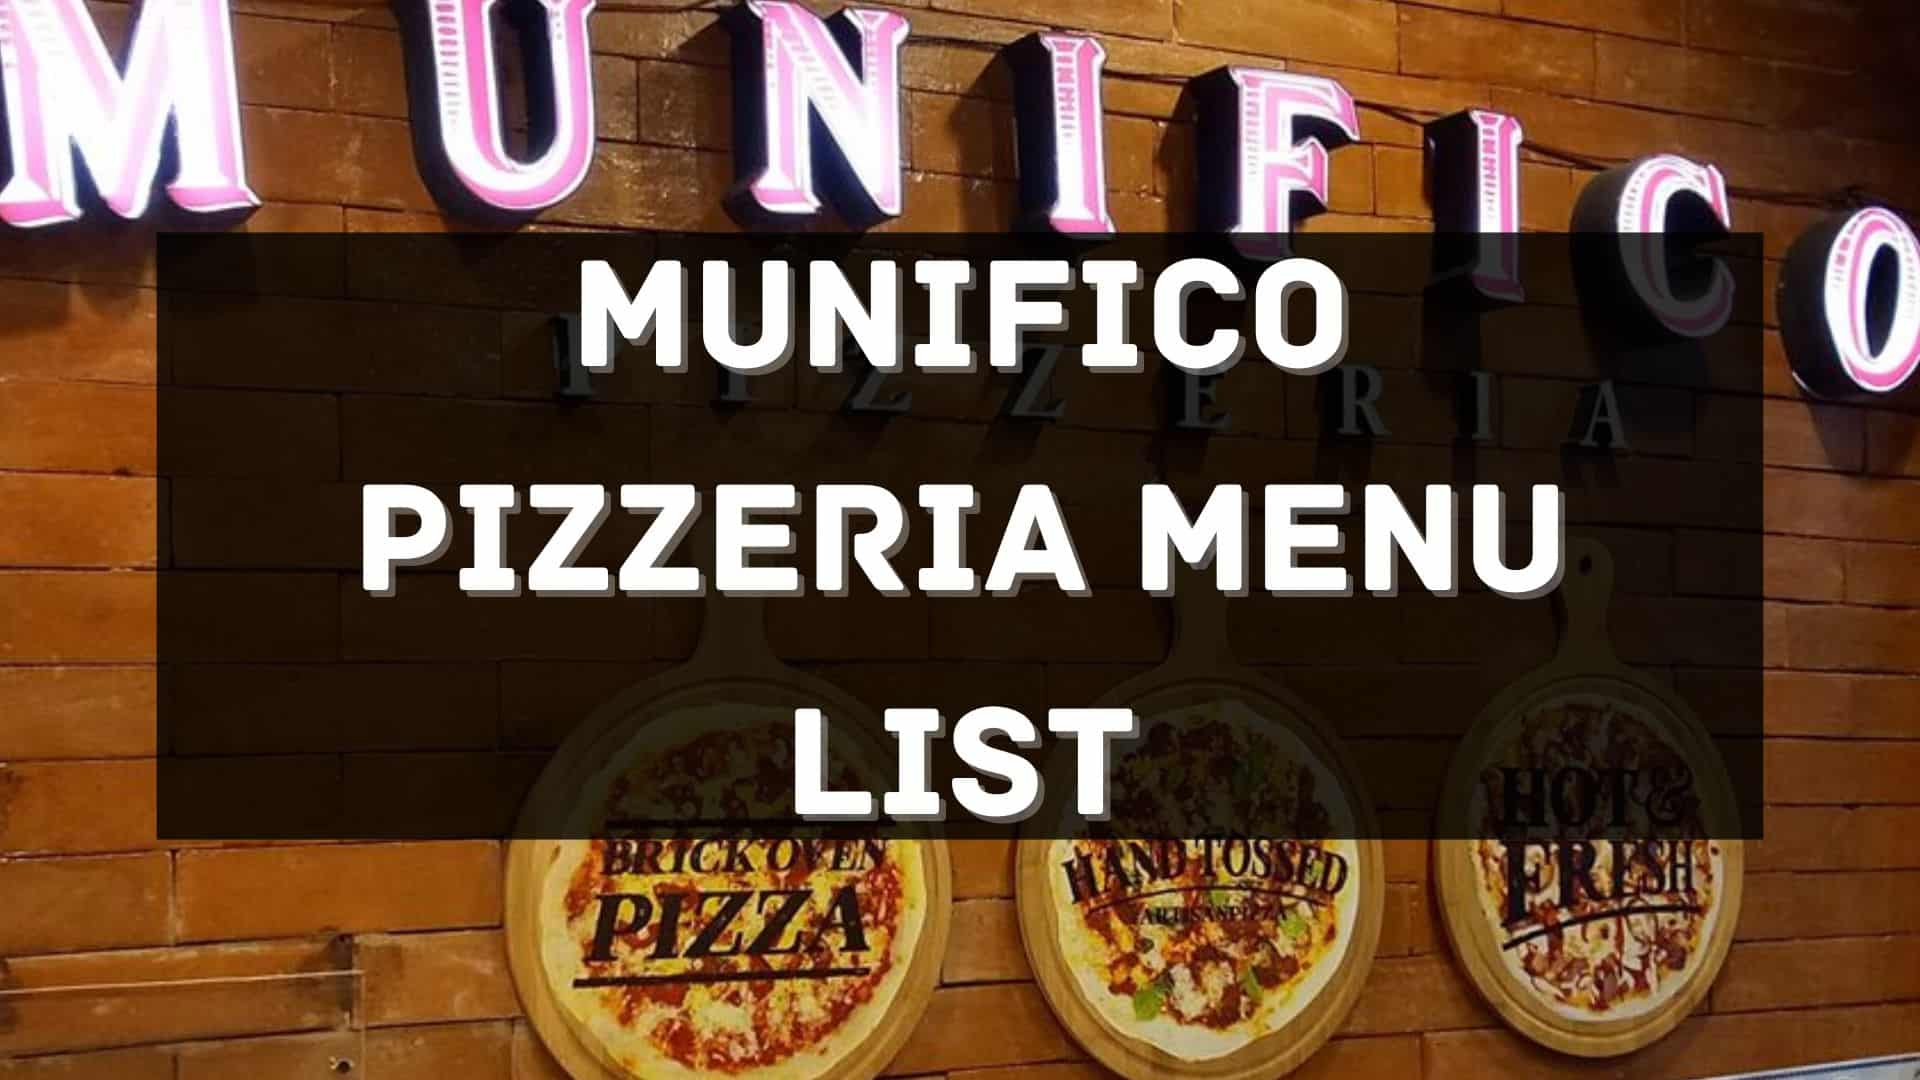 munifico pizzeria menu prices philippines